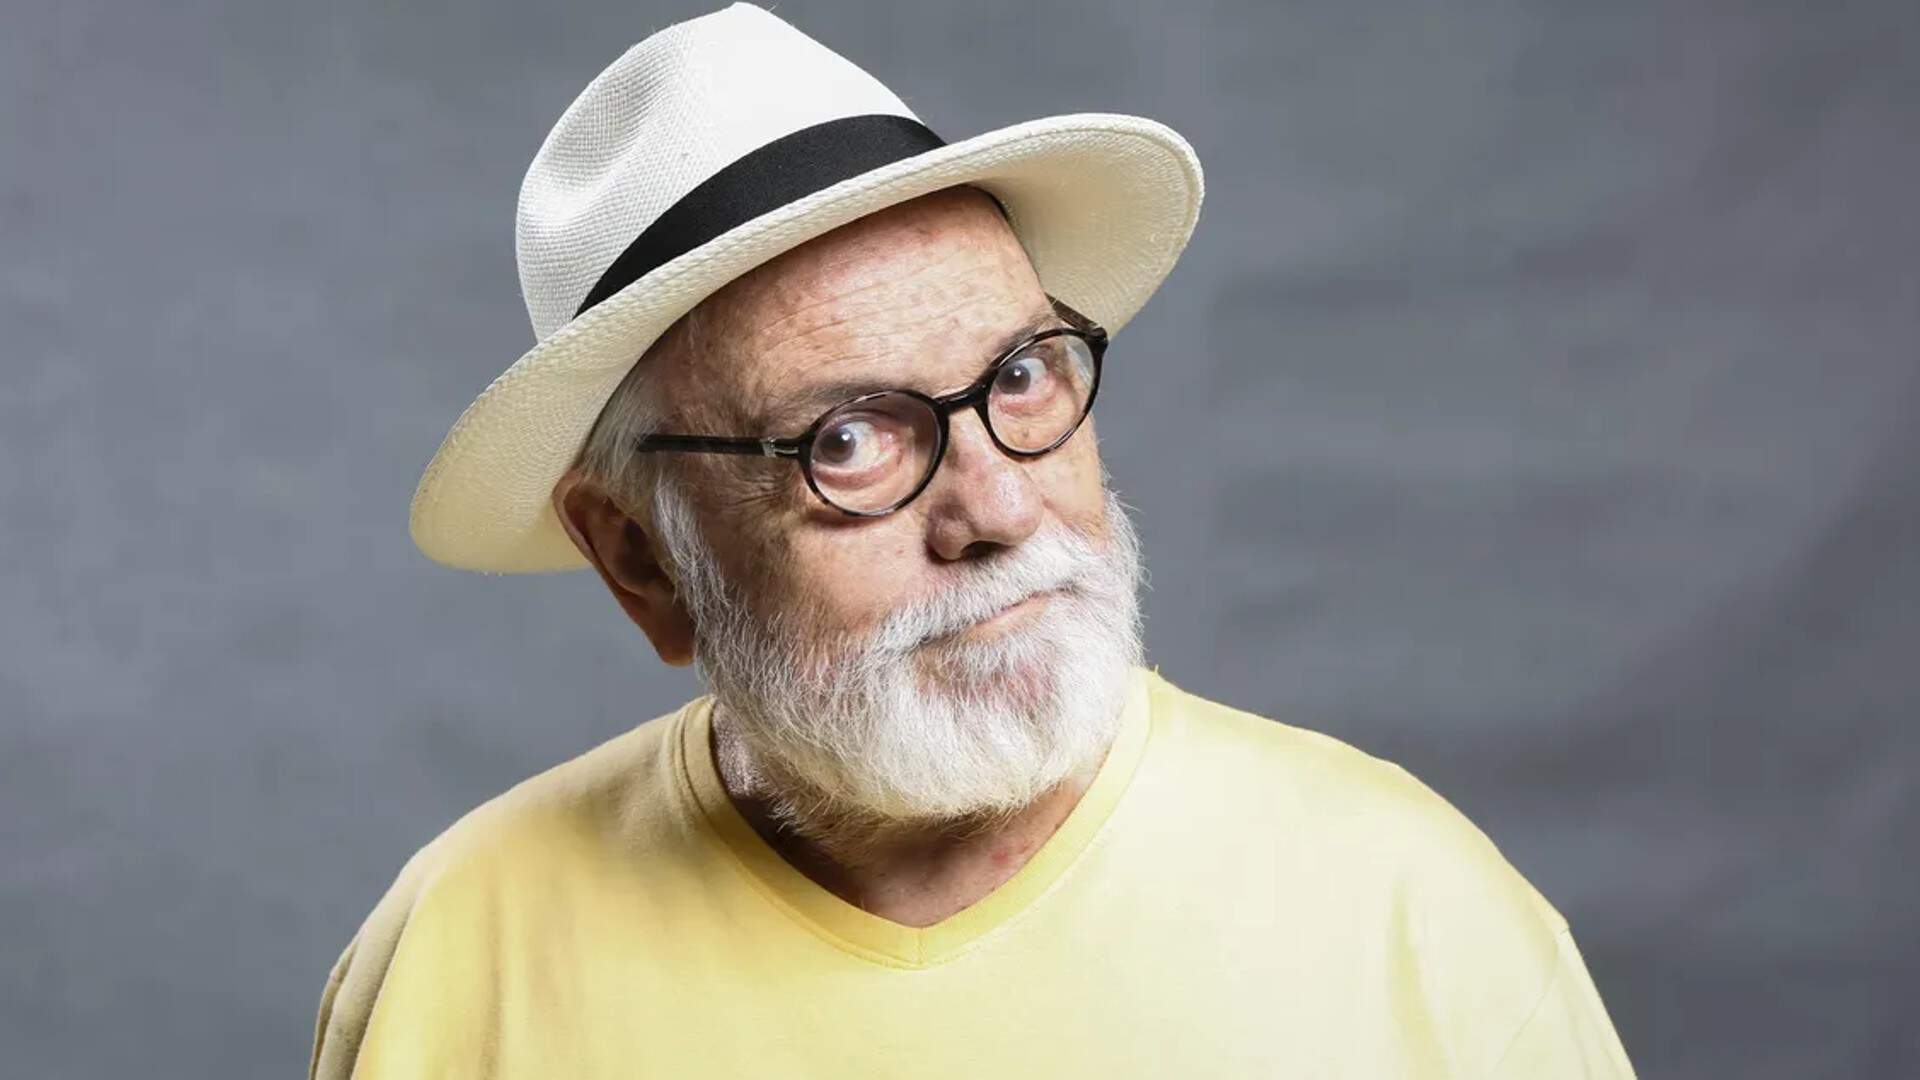 Luto! Ator global Antônio Pedro morre aos 82 anos e gera comoção nacional - Metropolitana FM